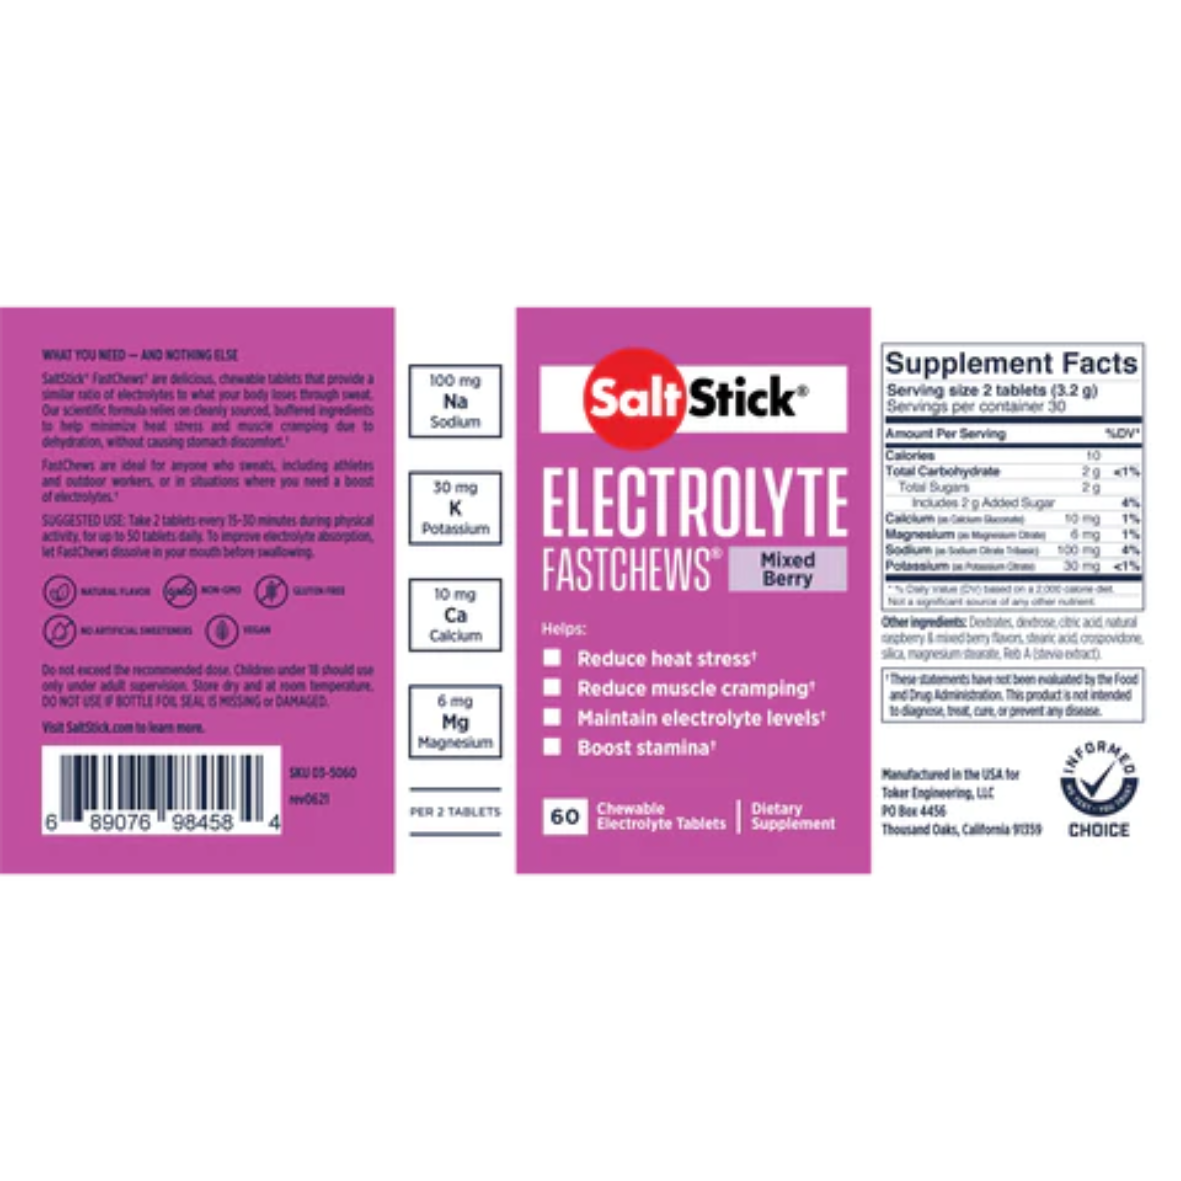 SaltStick - Electrolyte FastChews